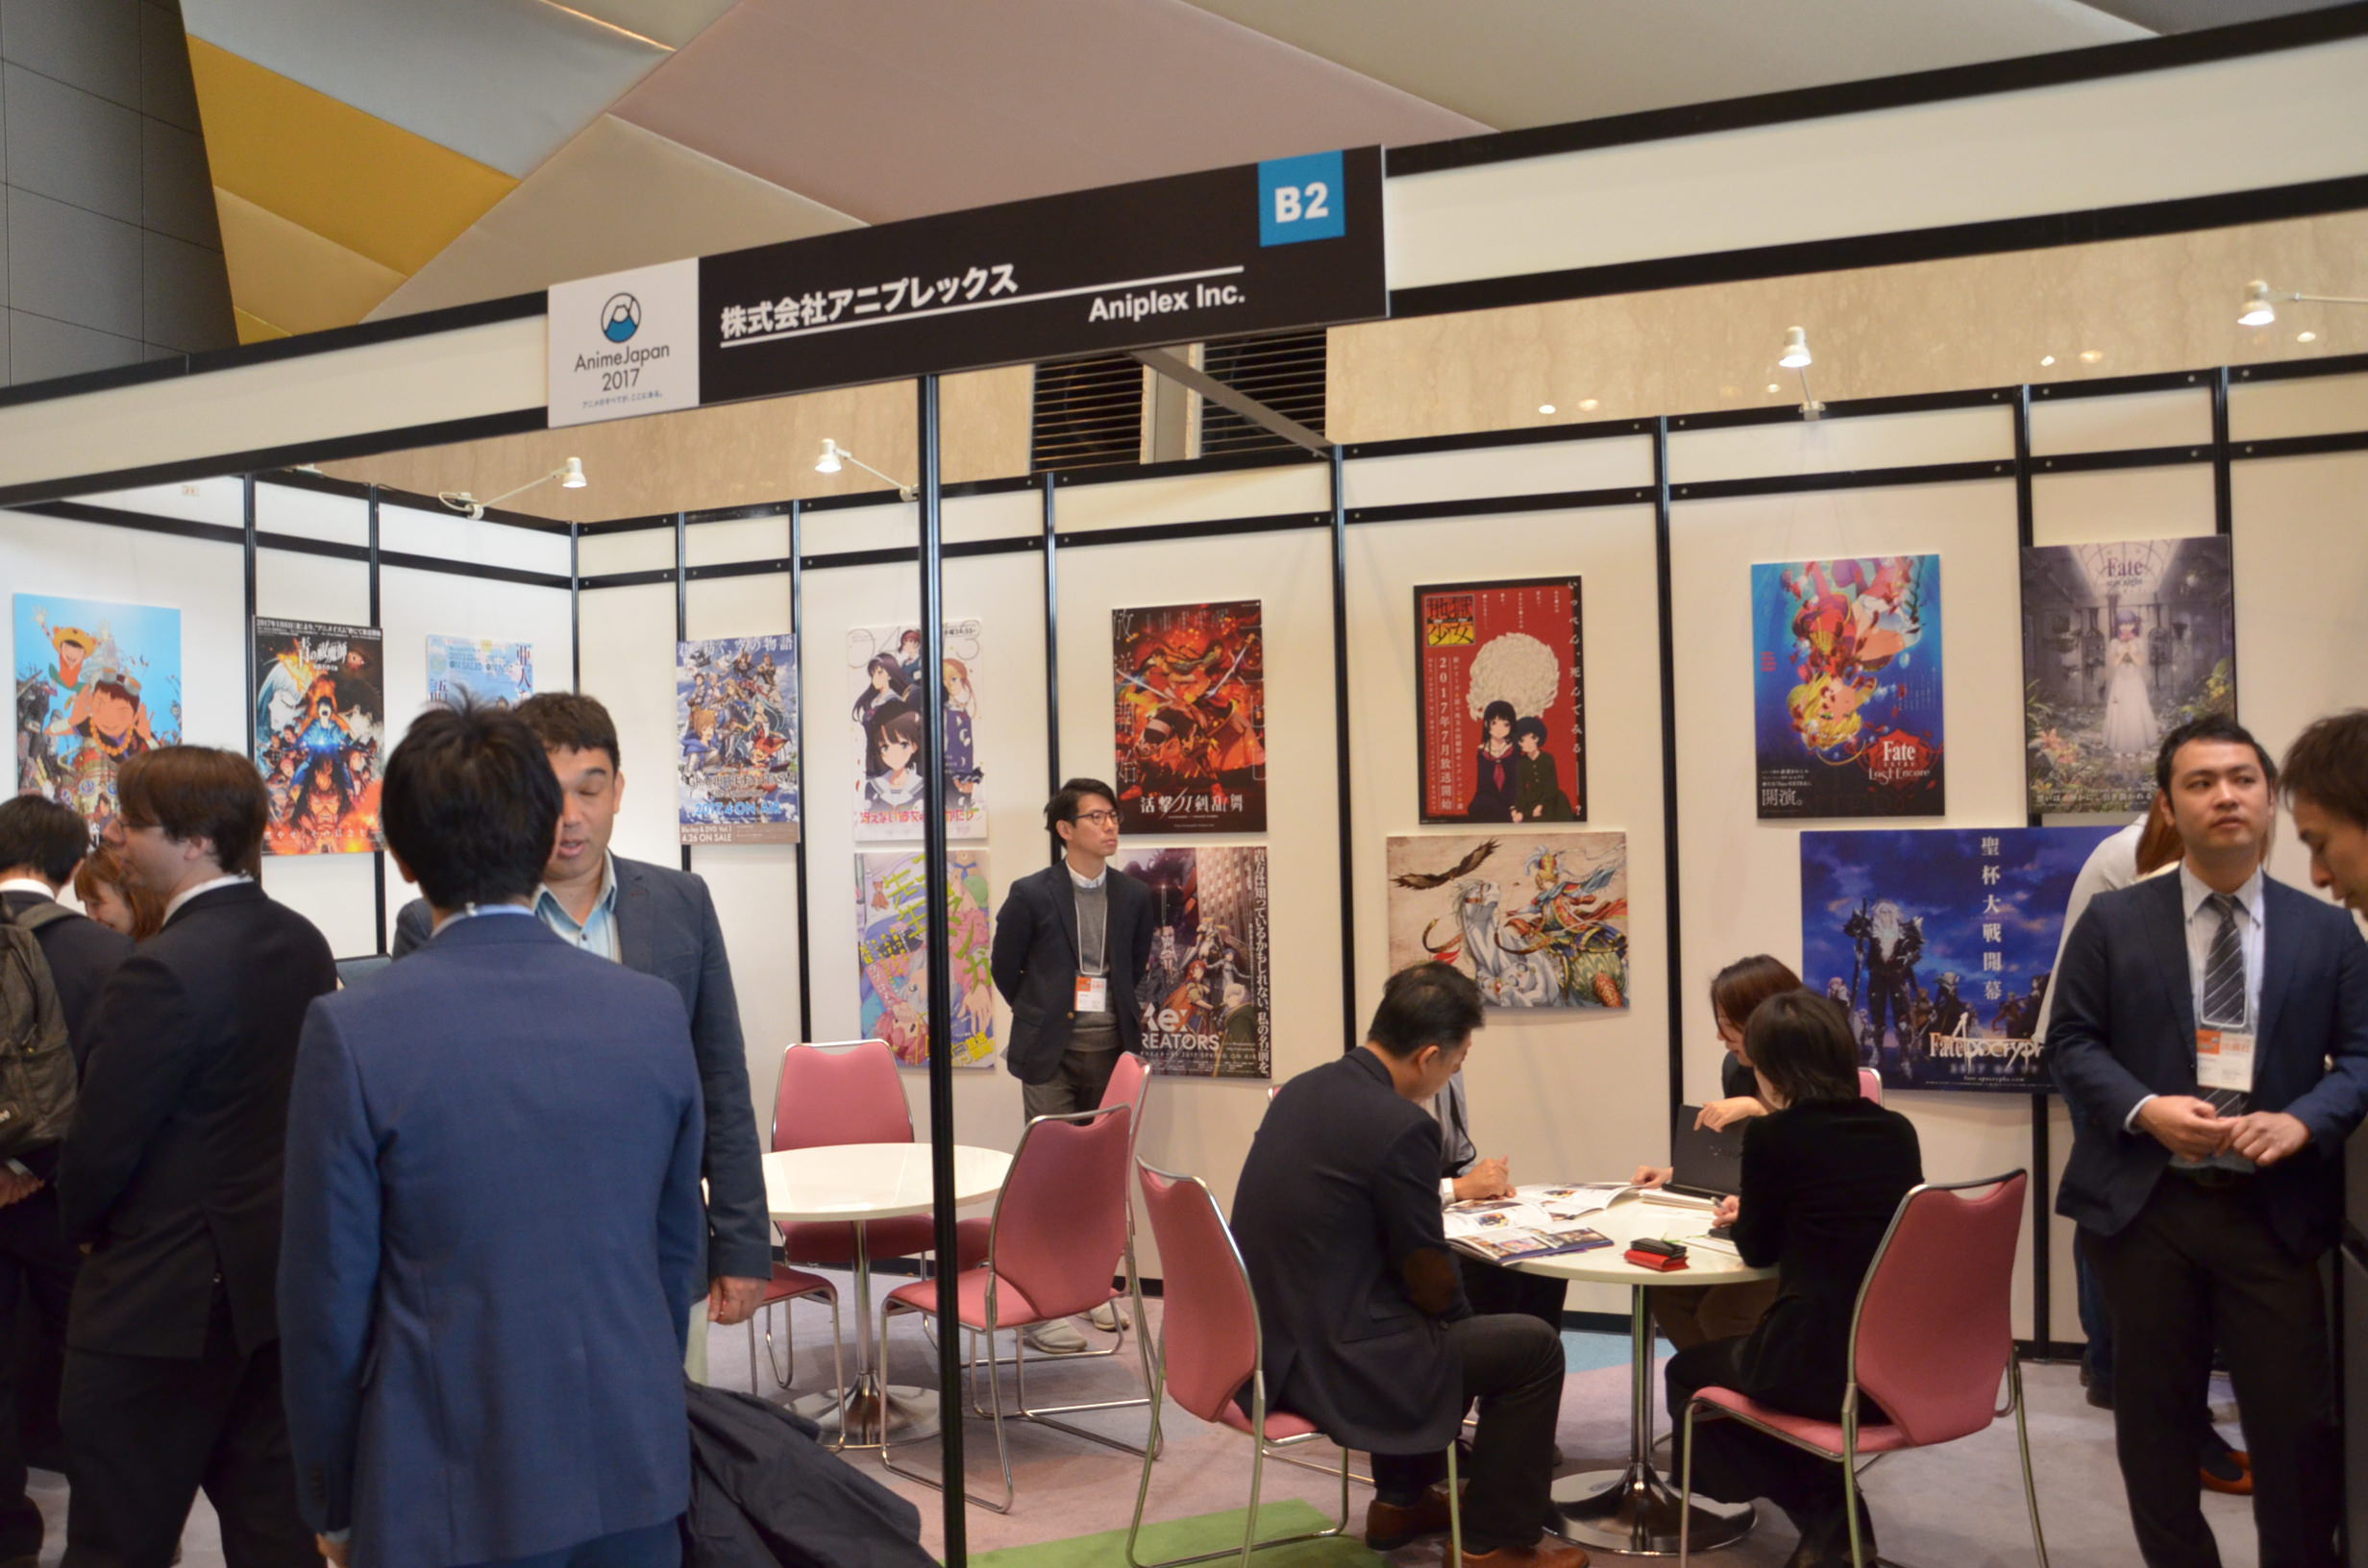 アニメジャパン2017 開幕 ビジネスブースも59社出展で活況 ガリガリ